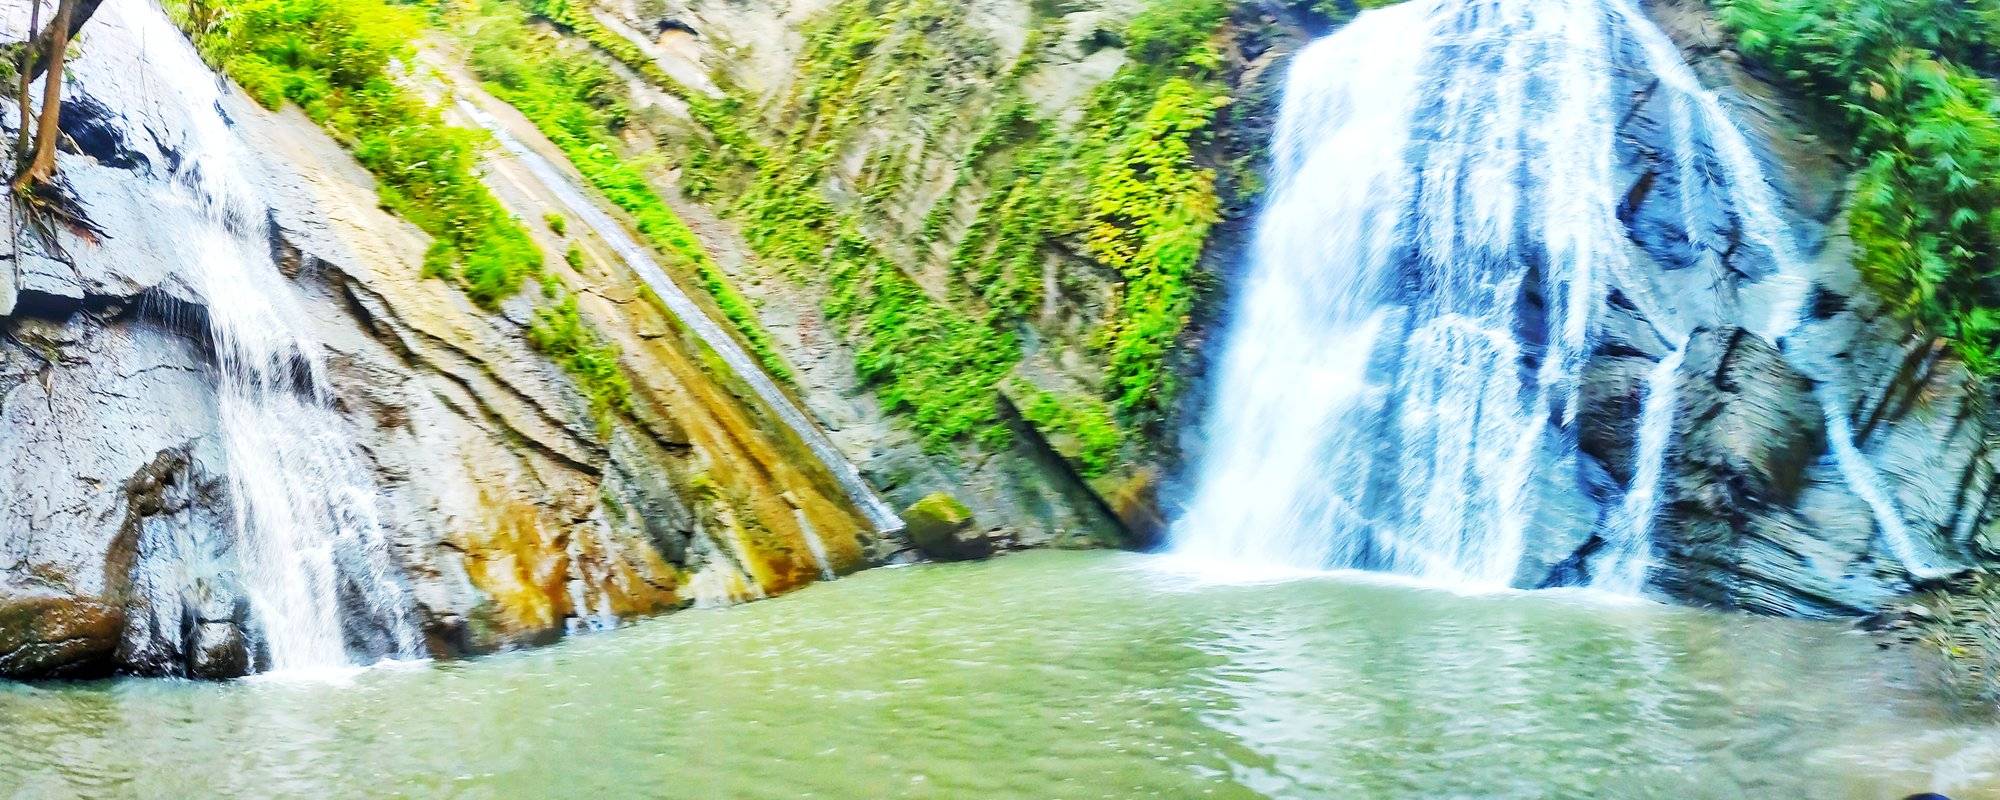 Waterfall: The 5 hours trekking of Damtua Waterfall 